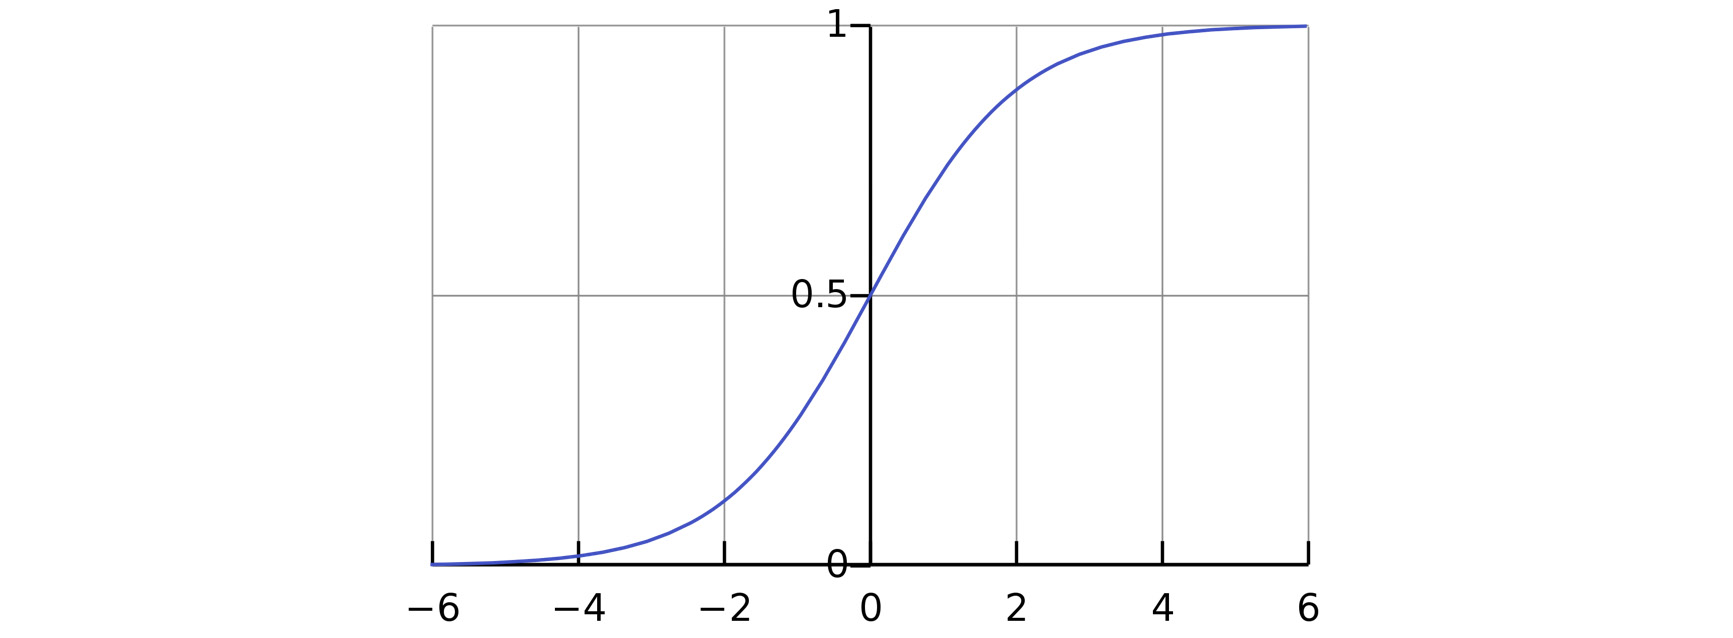 Figure 11.15: Sigmoid curve on a plot 
